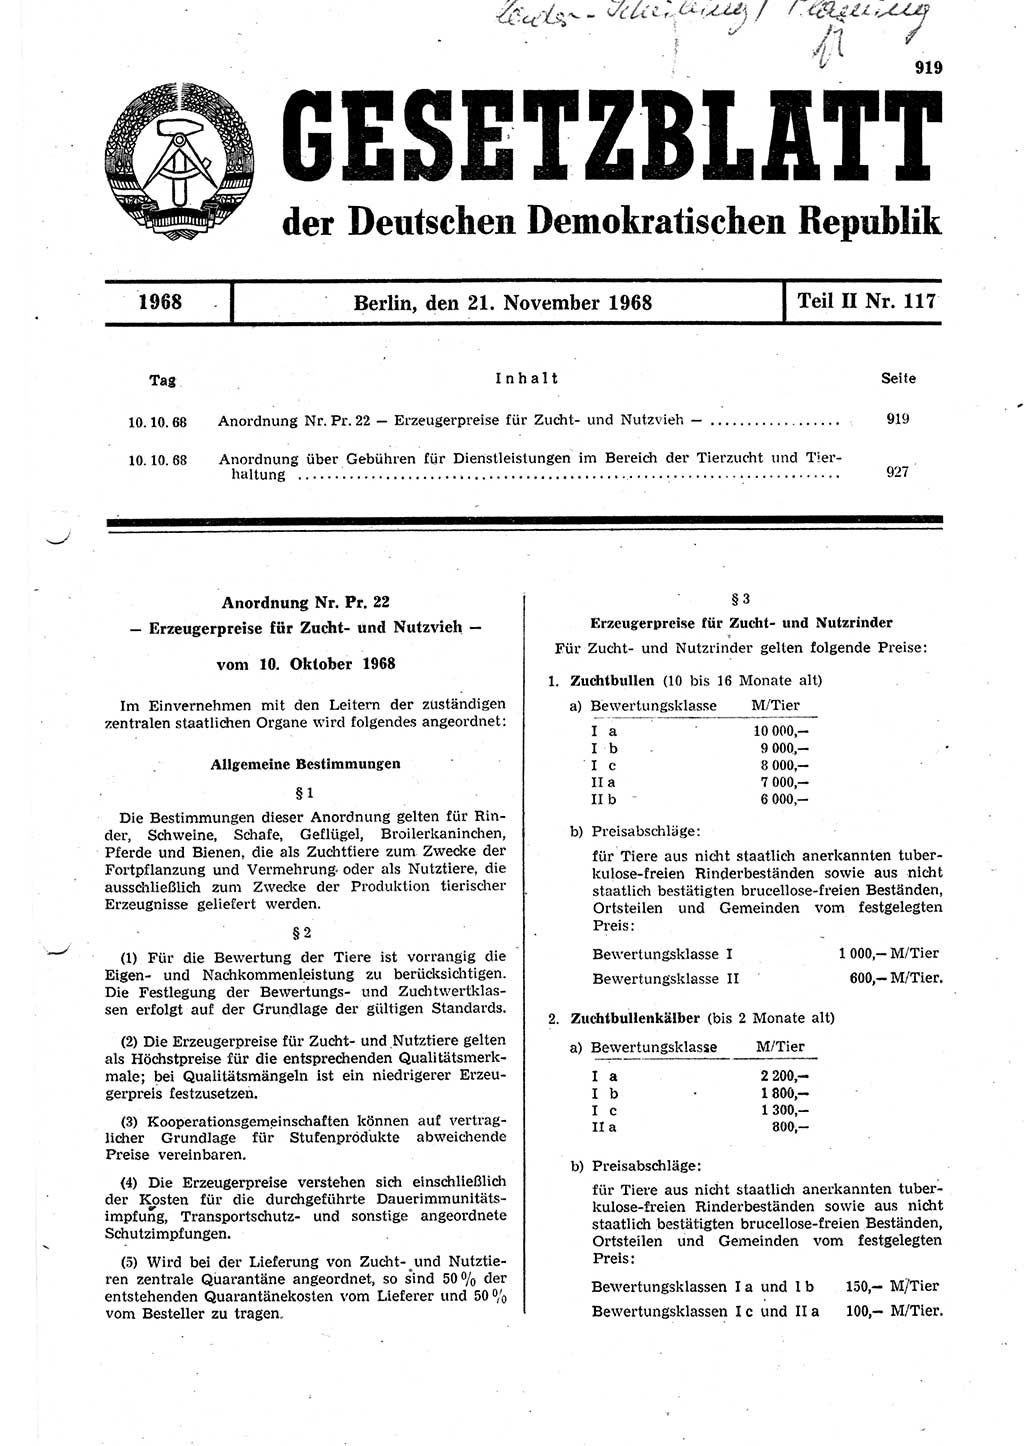 Gesetzblatt (GBl.) der Deutschen Demokratischen Republik (DDR) Teil ⅠⅠ 1968, Seite 919 (GBl. DDR ⅠⅠ 1968, S. 919)